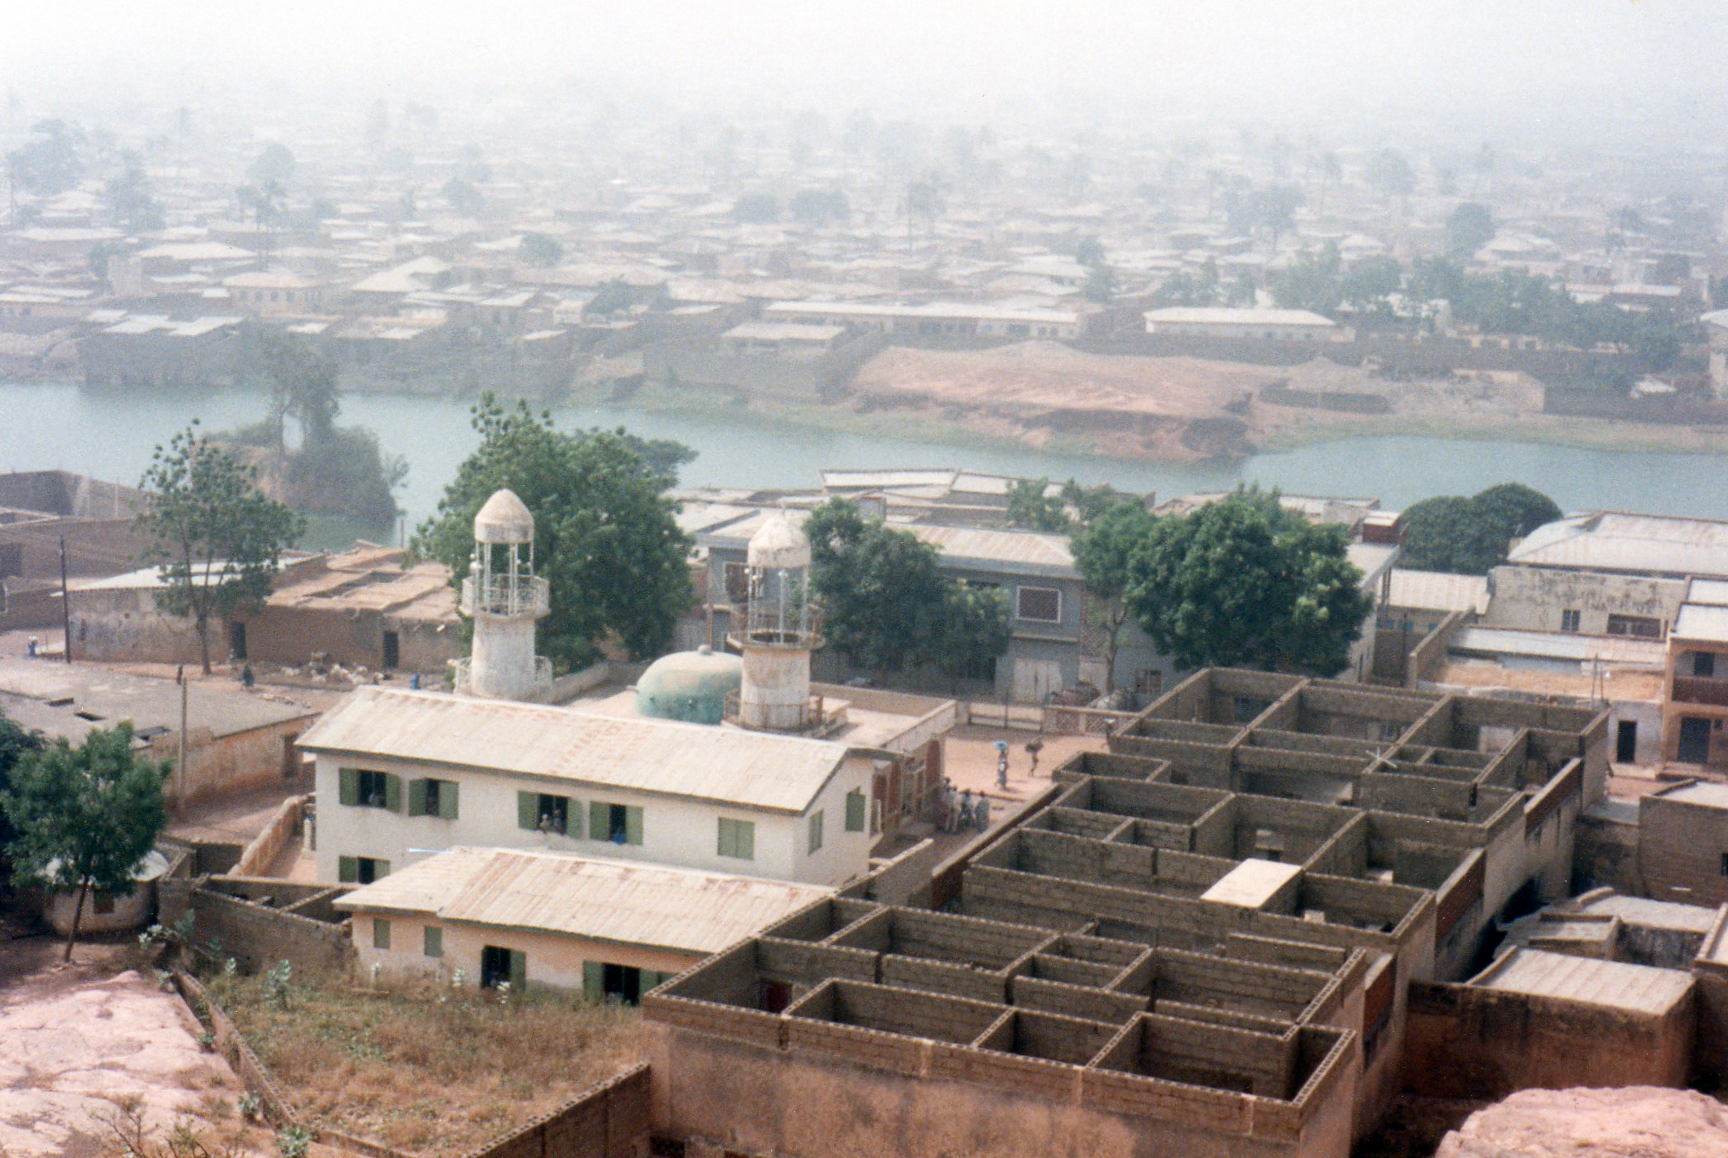 La ville de Kano, au nord du Nigeria (Photo: David Holt/Flickr/CC BY-SA 2.0)